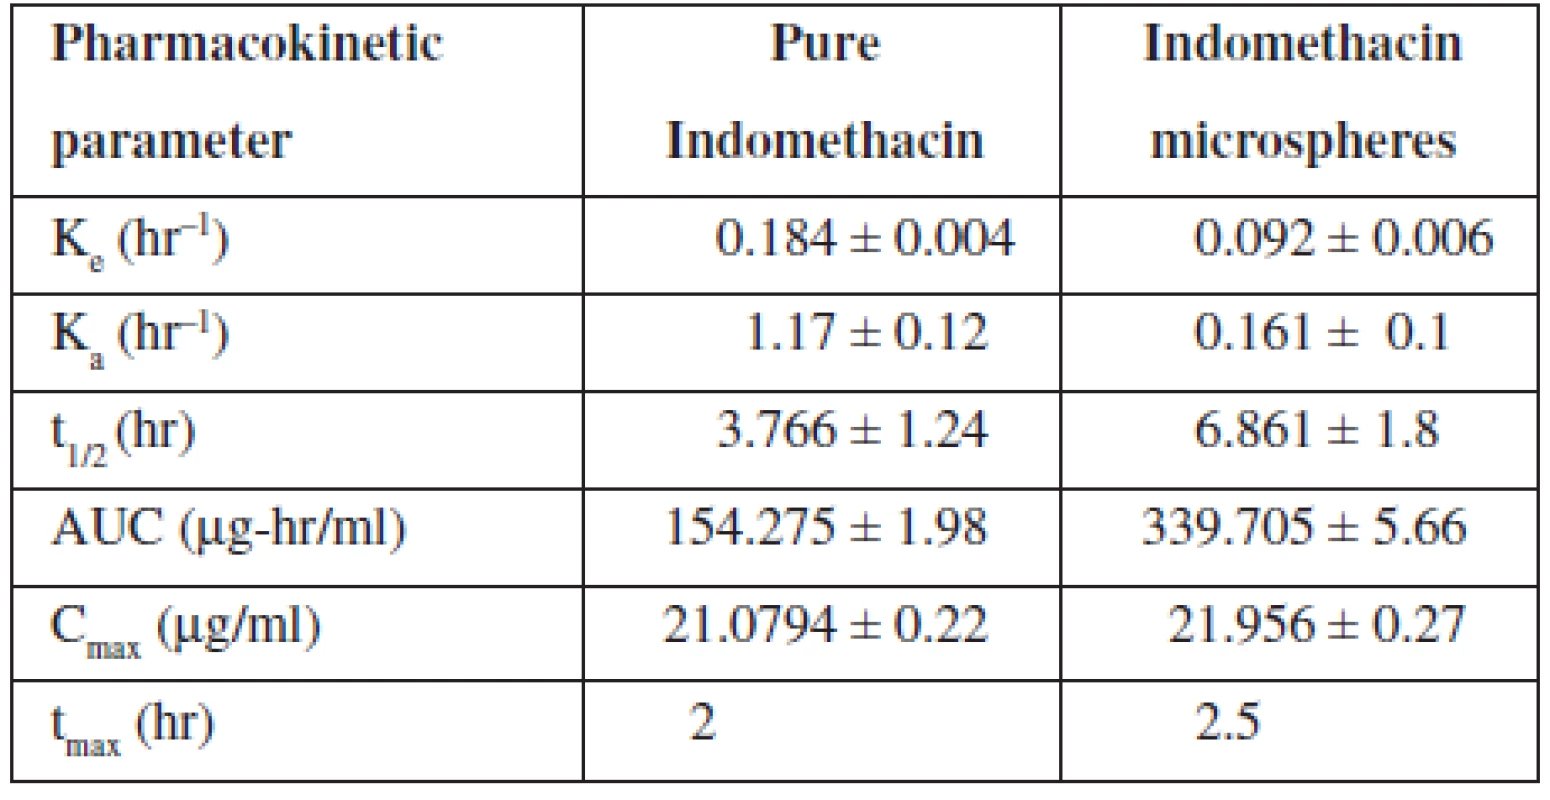 Pharmacokinetic parameters of indomethacin